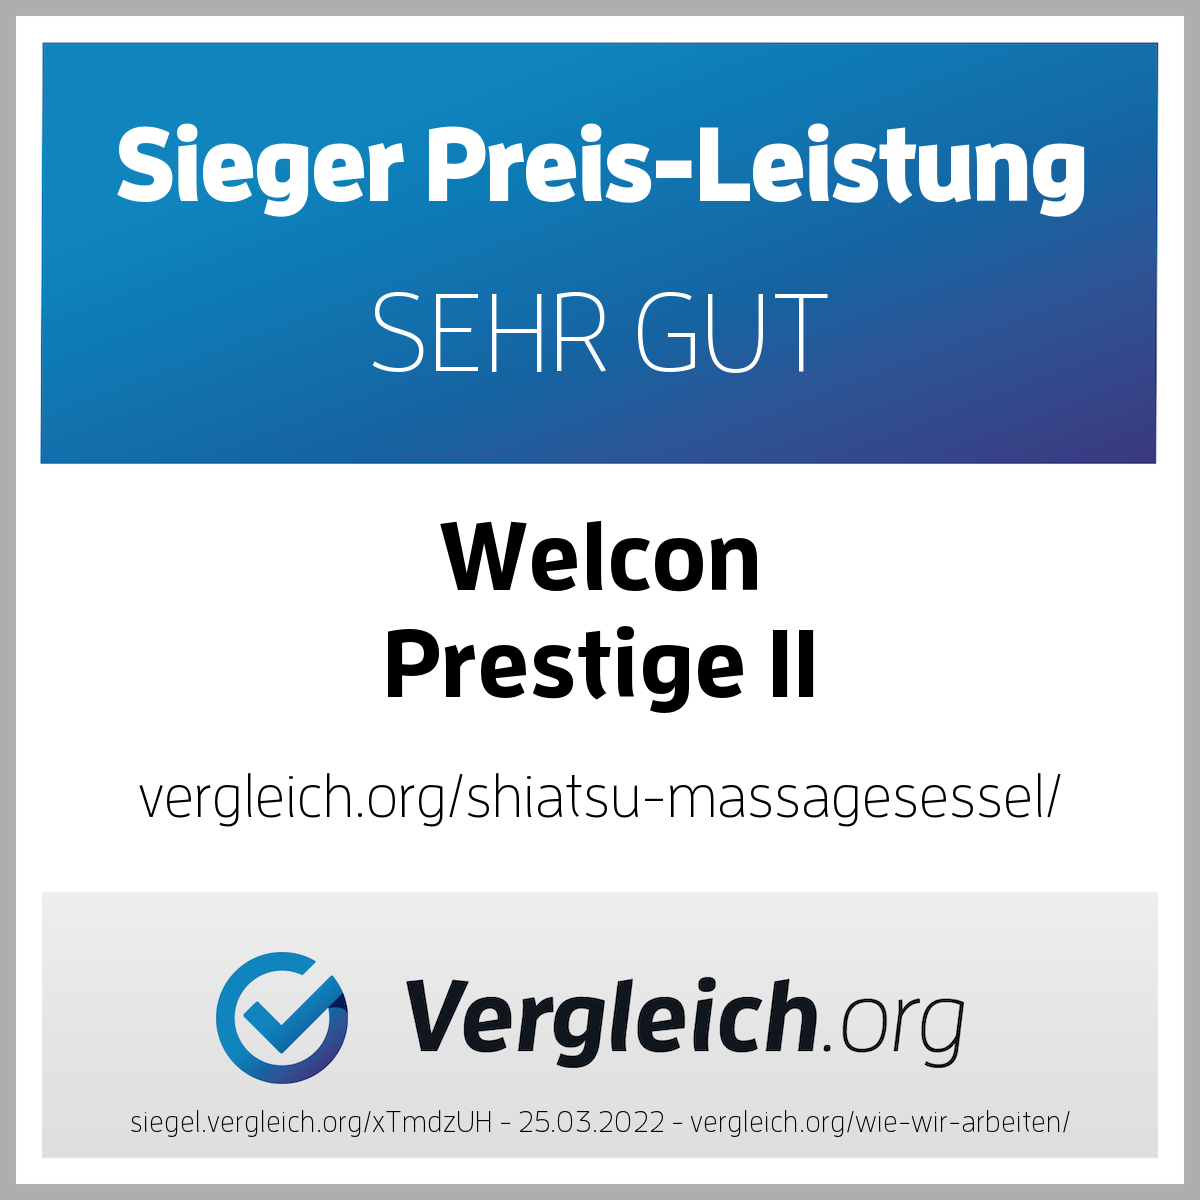 Massagesessel WELCON Prestige II in schwarz / weiß - Sale